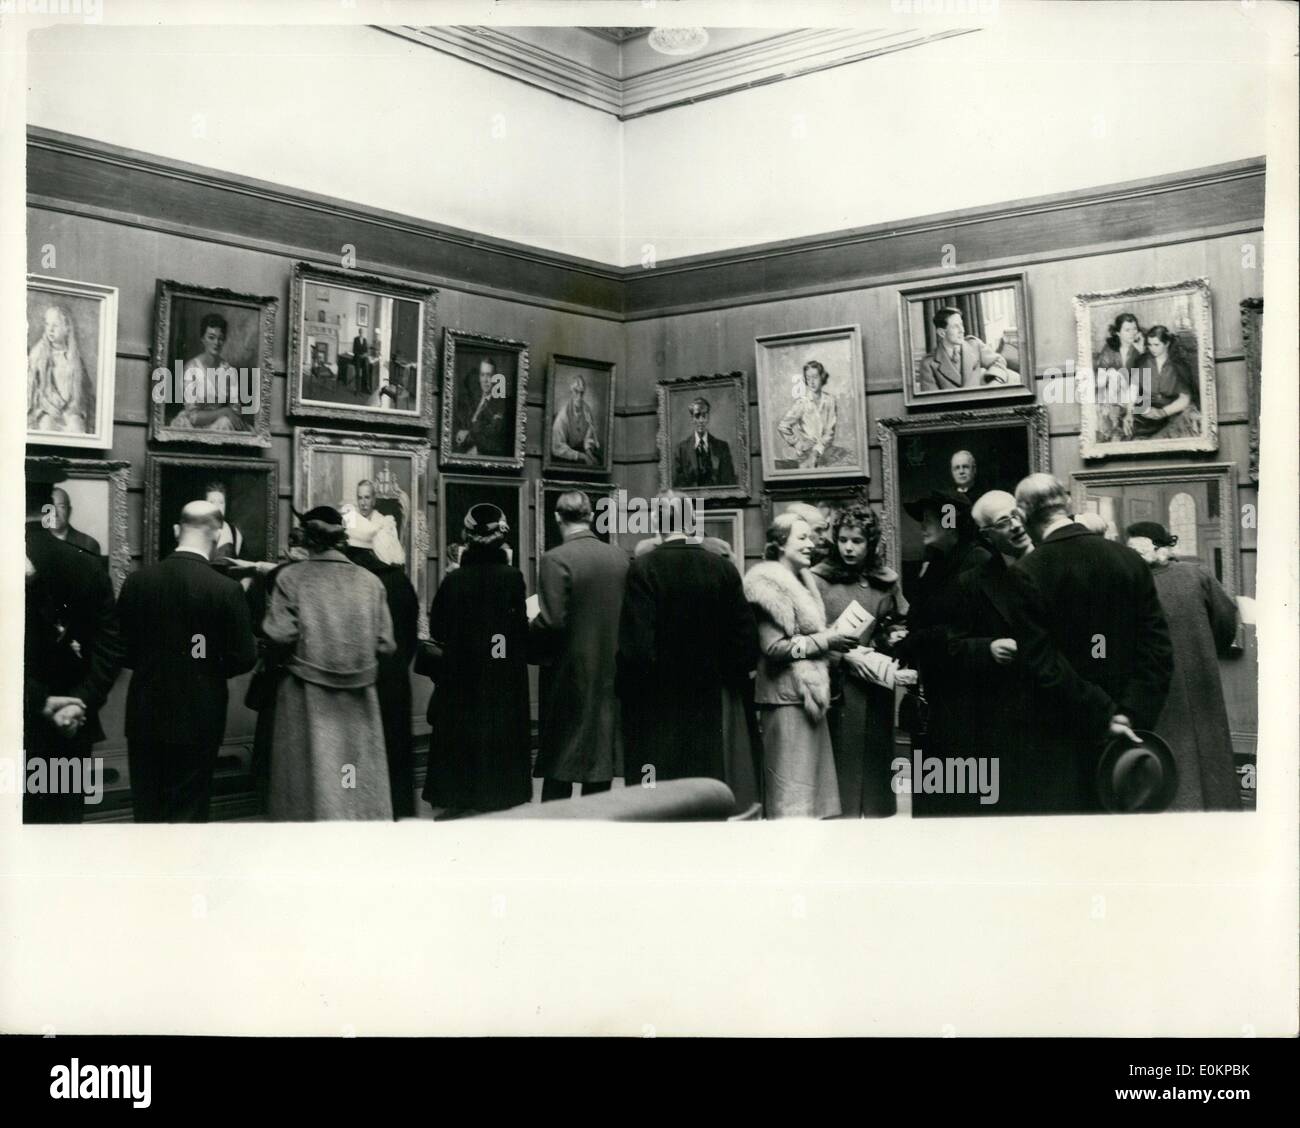 Nov. 11, 1935 - Apertura del Royal ritratto la società mostra, vista generale: Foto mostra la vista generale del Regio istituto Foto Stock